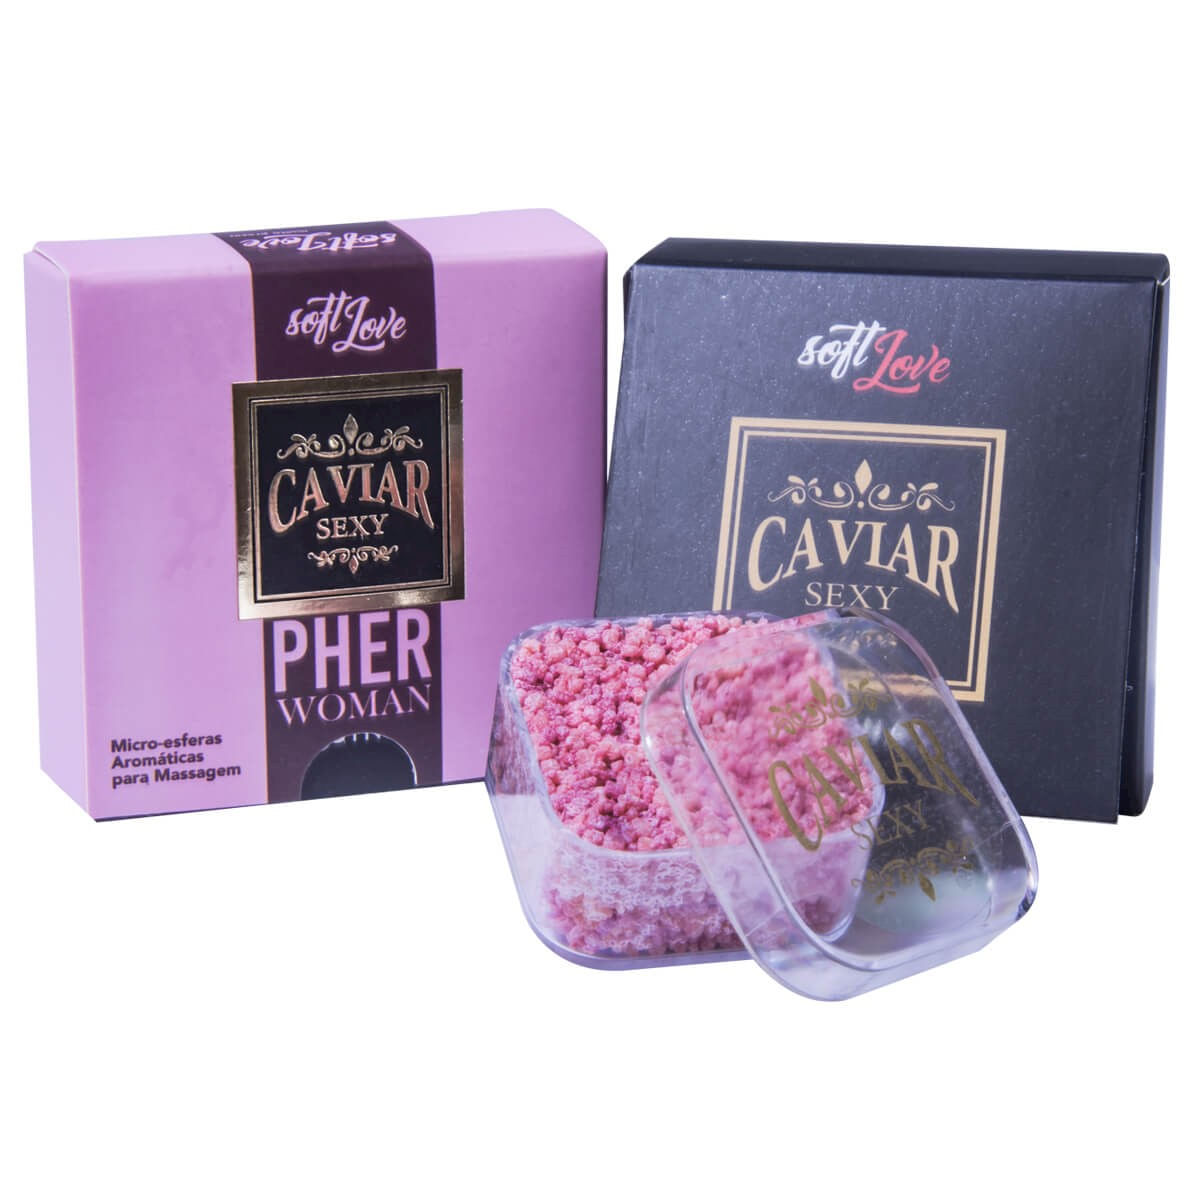 Caviar Sexy Pher Woman Micro Esferas Aromáticas para Massagem 14g Soft Love